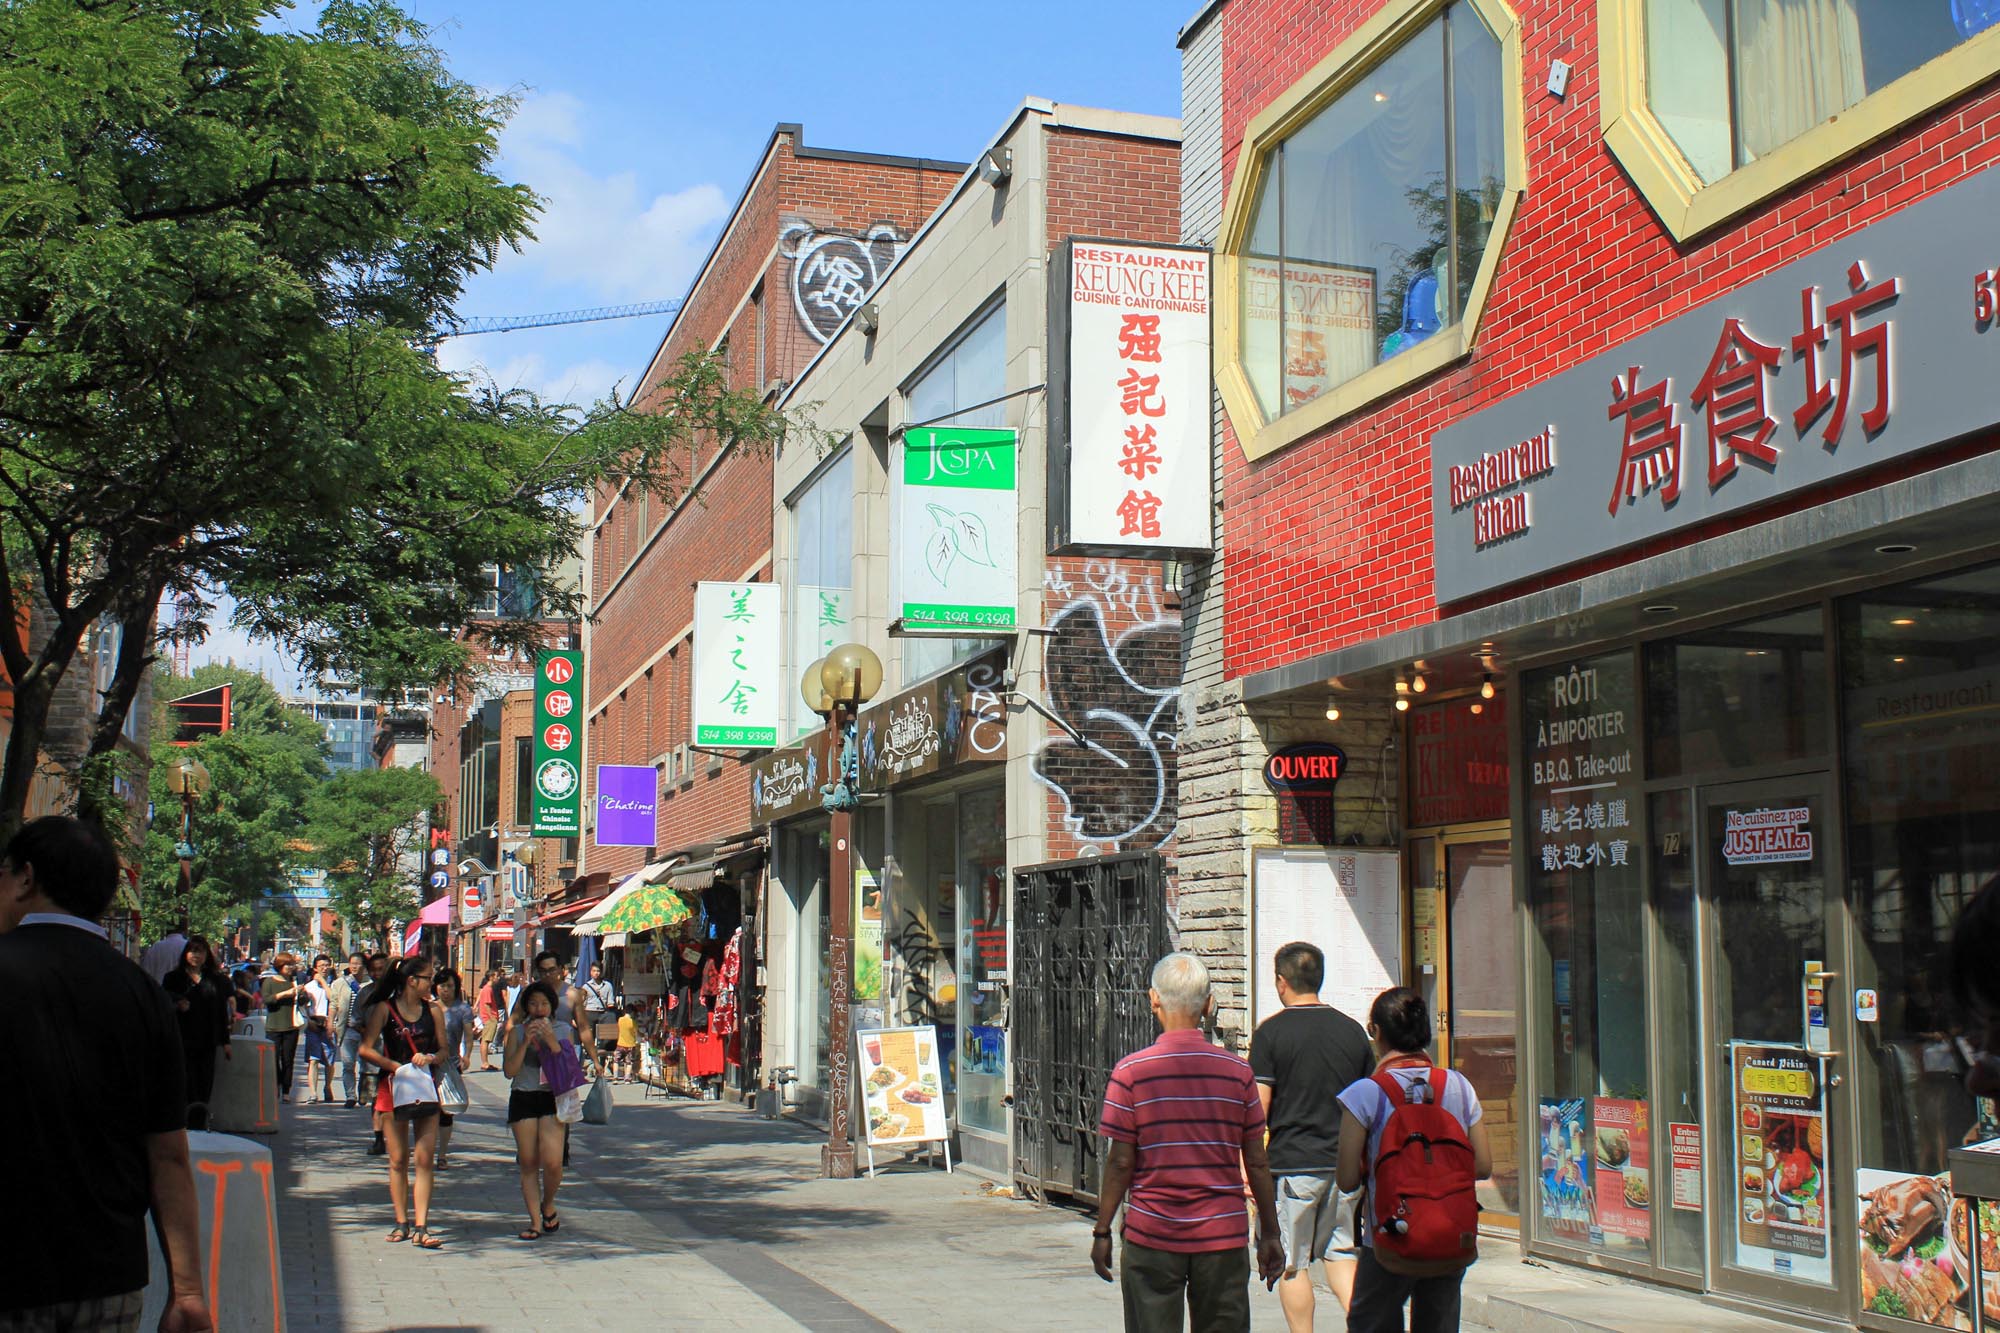 Le quartier chinois de Montréal